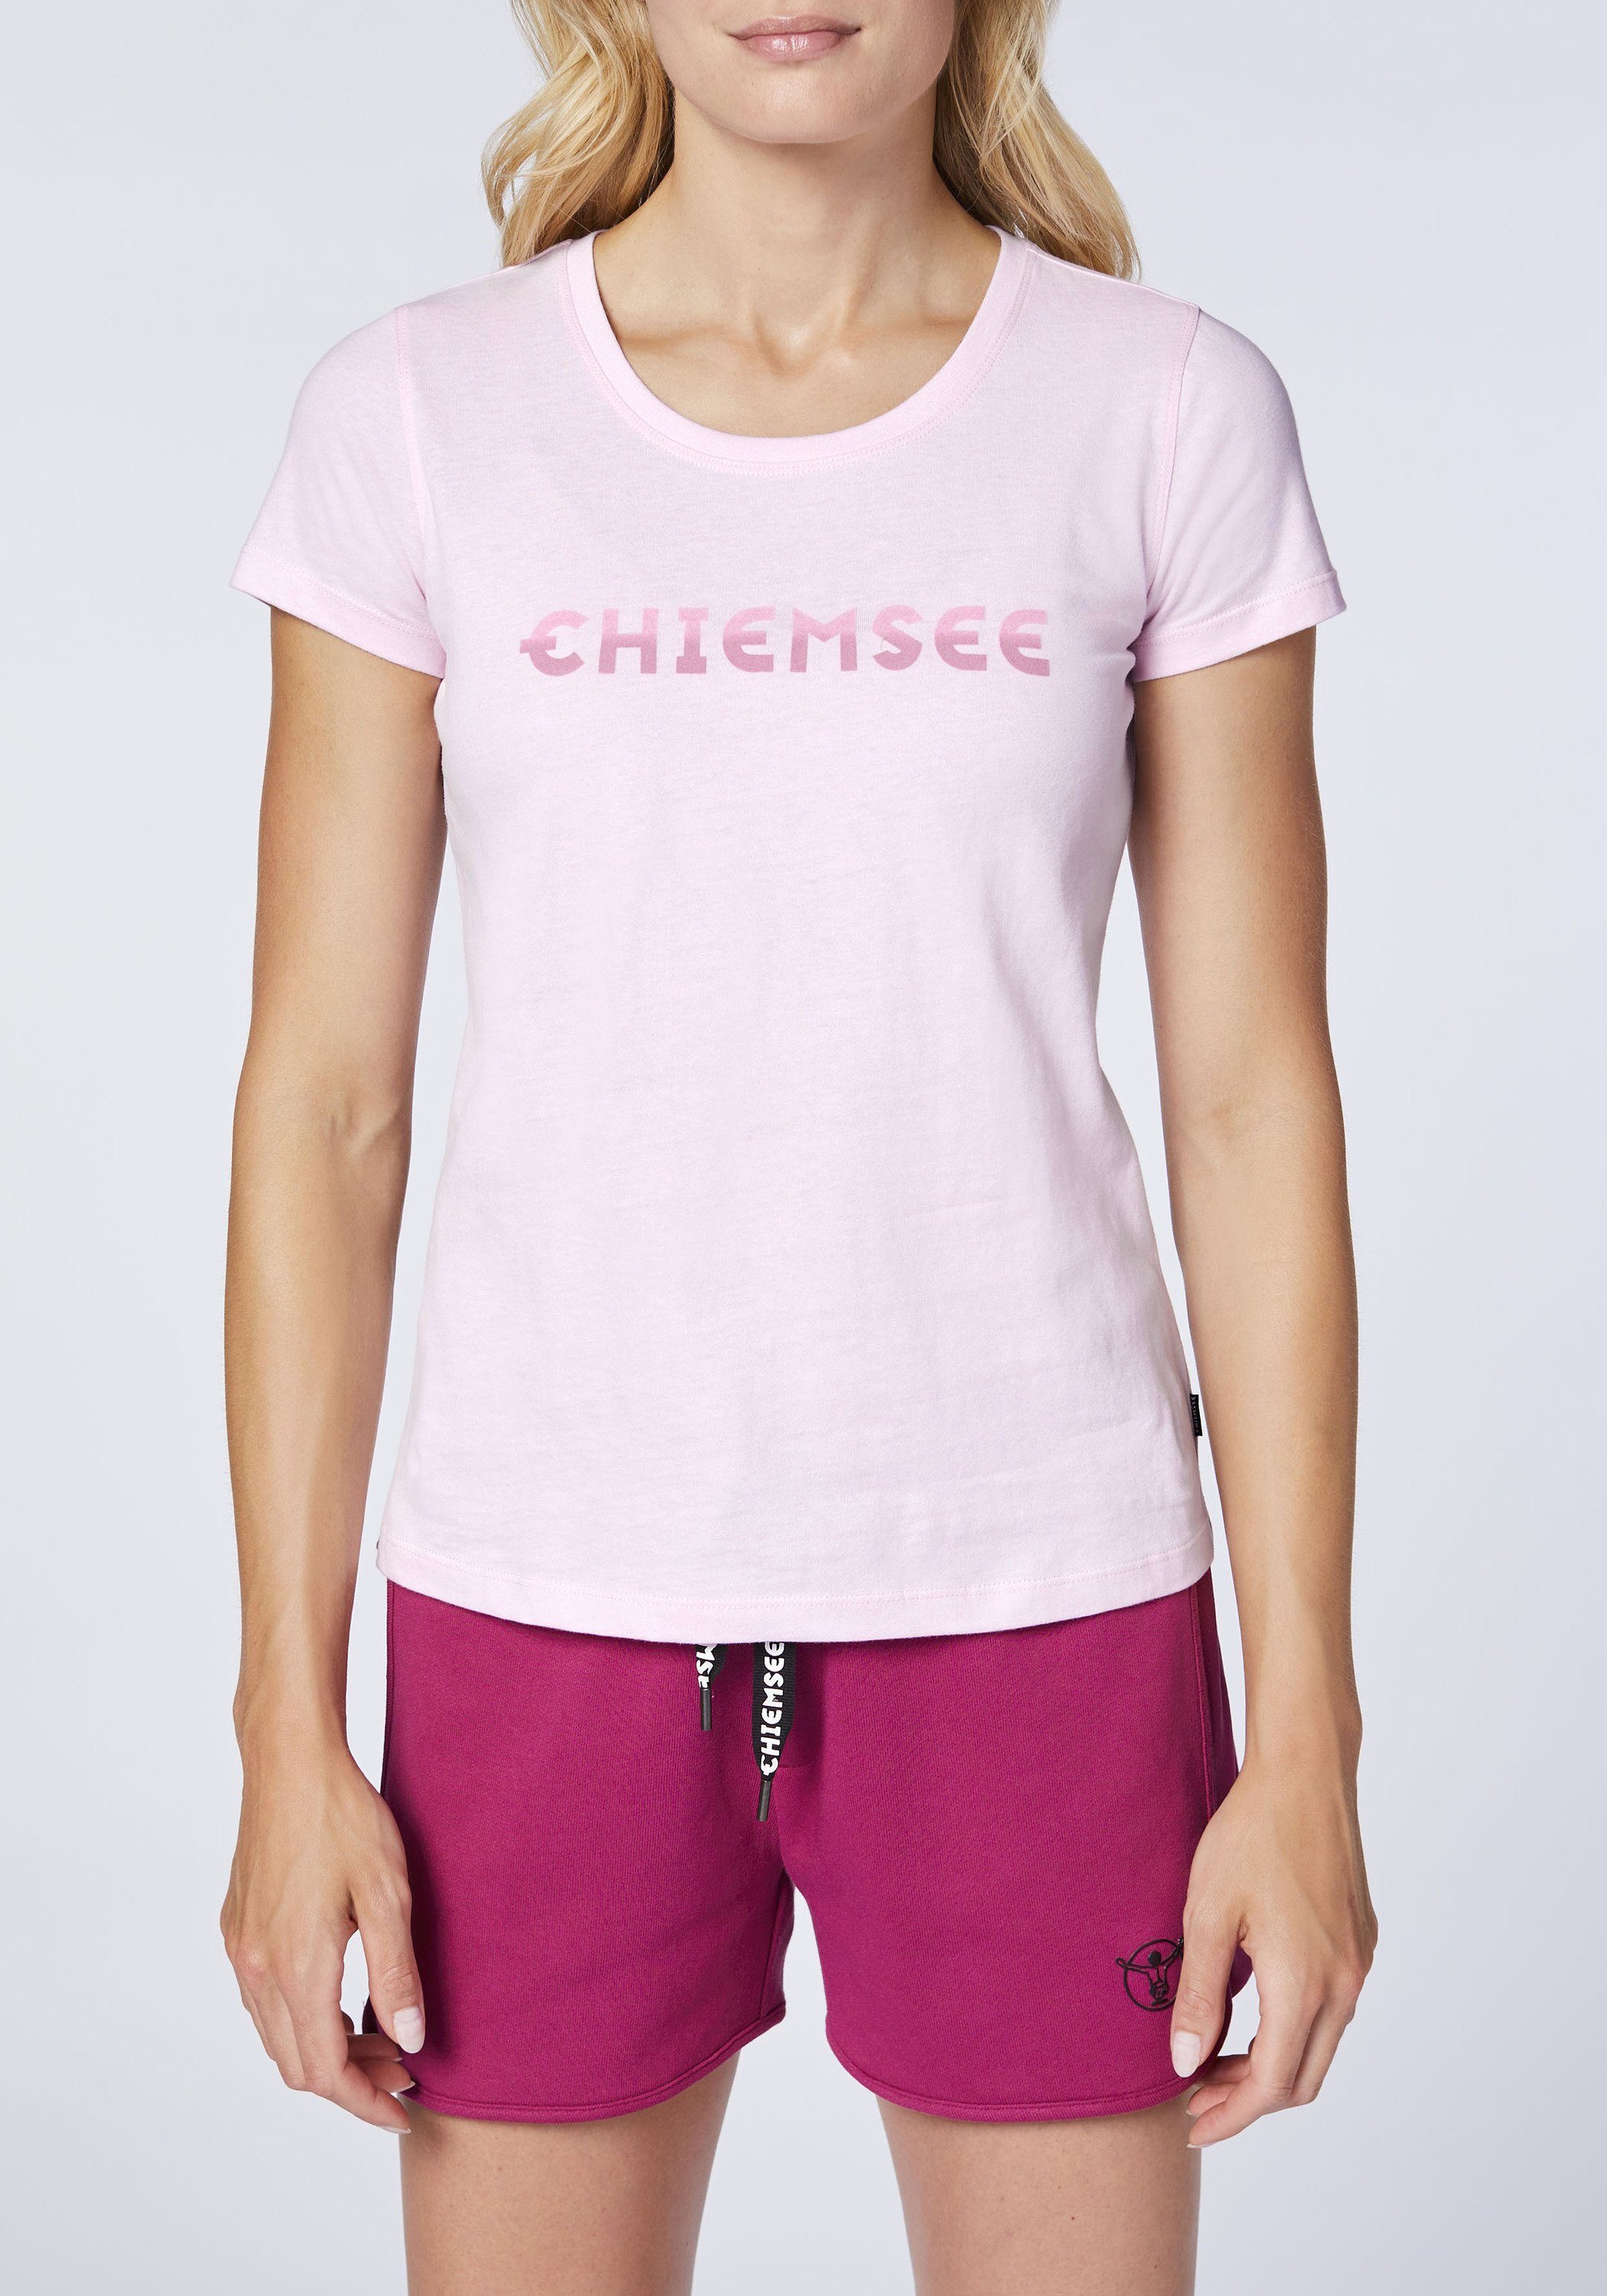 Chiemsee Print-Shirt T-Shirt mit in Logo Lady Pink Farbverlauf-Optik 1